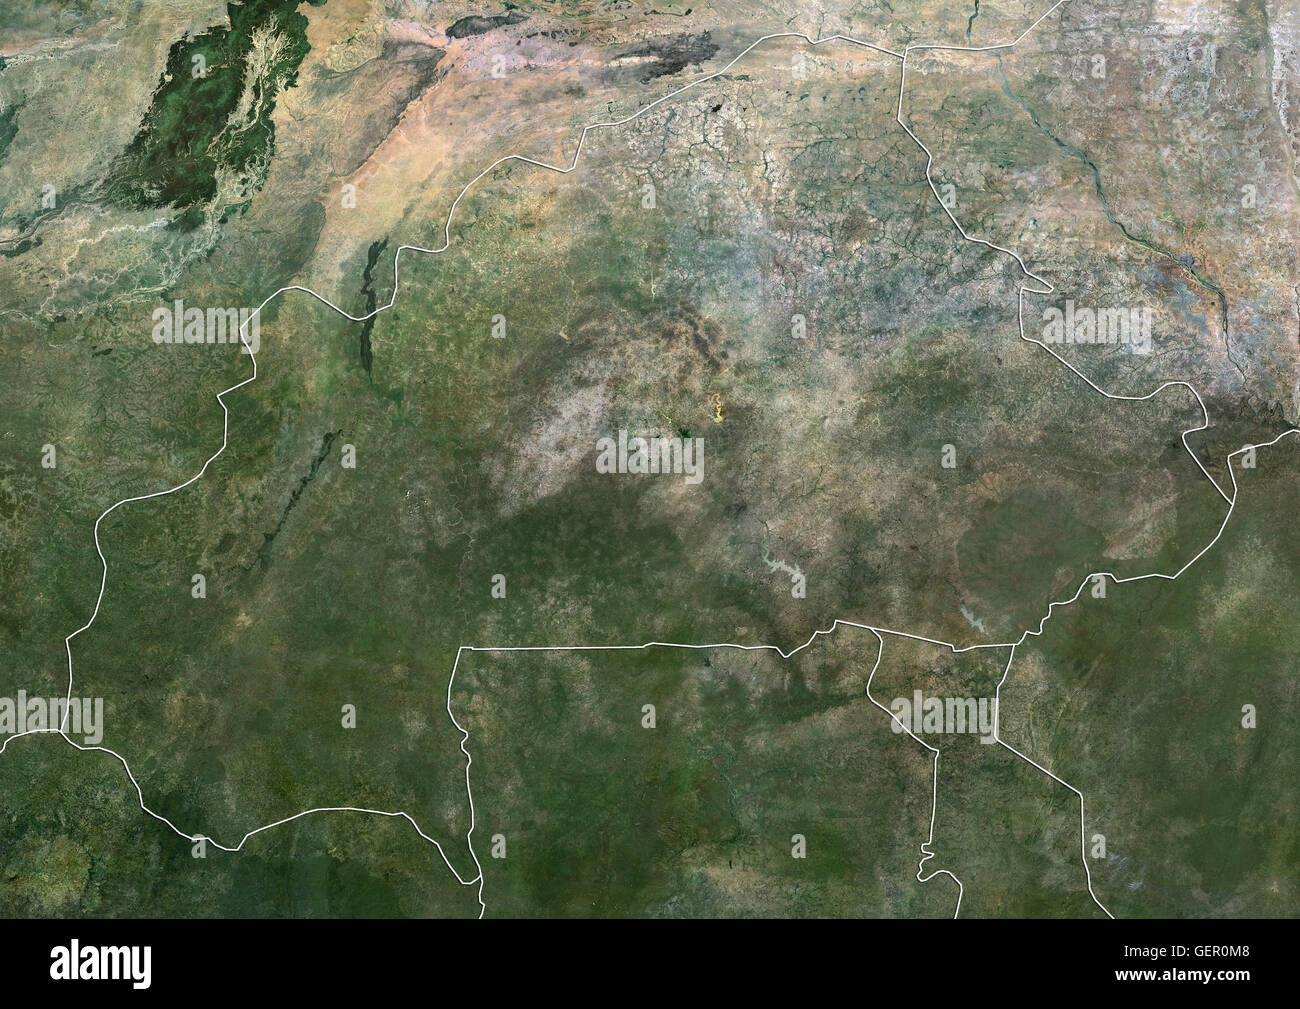 Satellitenansicht von Burkina Faso (mit Ländergrenzen). Dieses Bild wurde aus Daten von Landsat-Satelliten erworben erstellt. Stockfoto